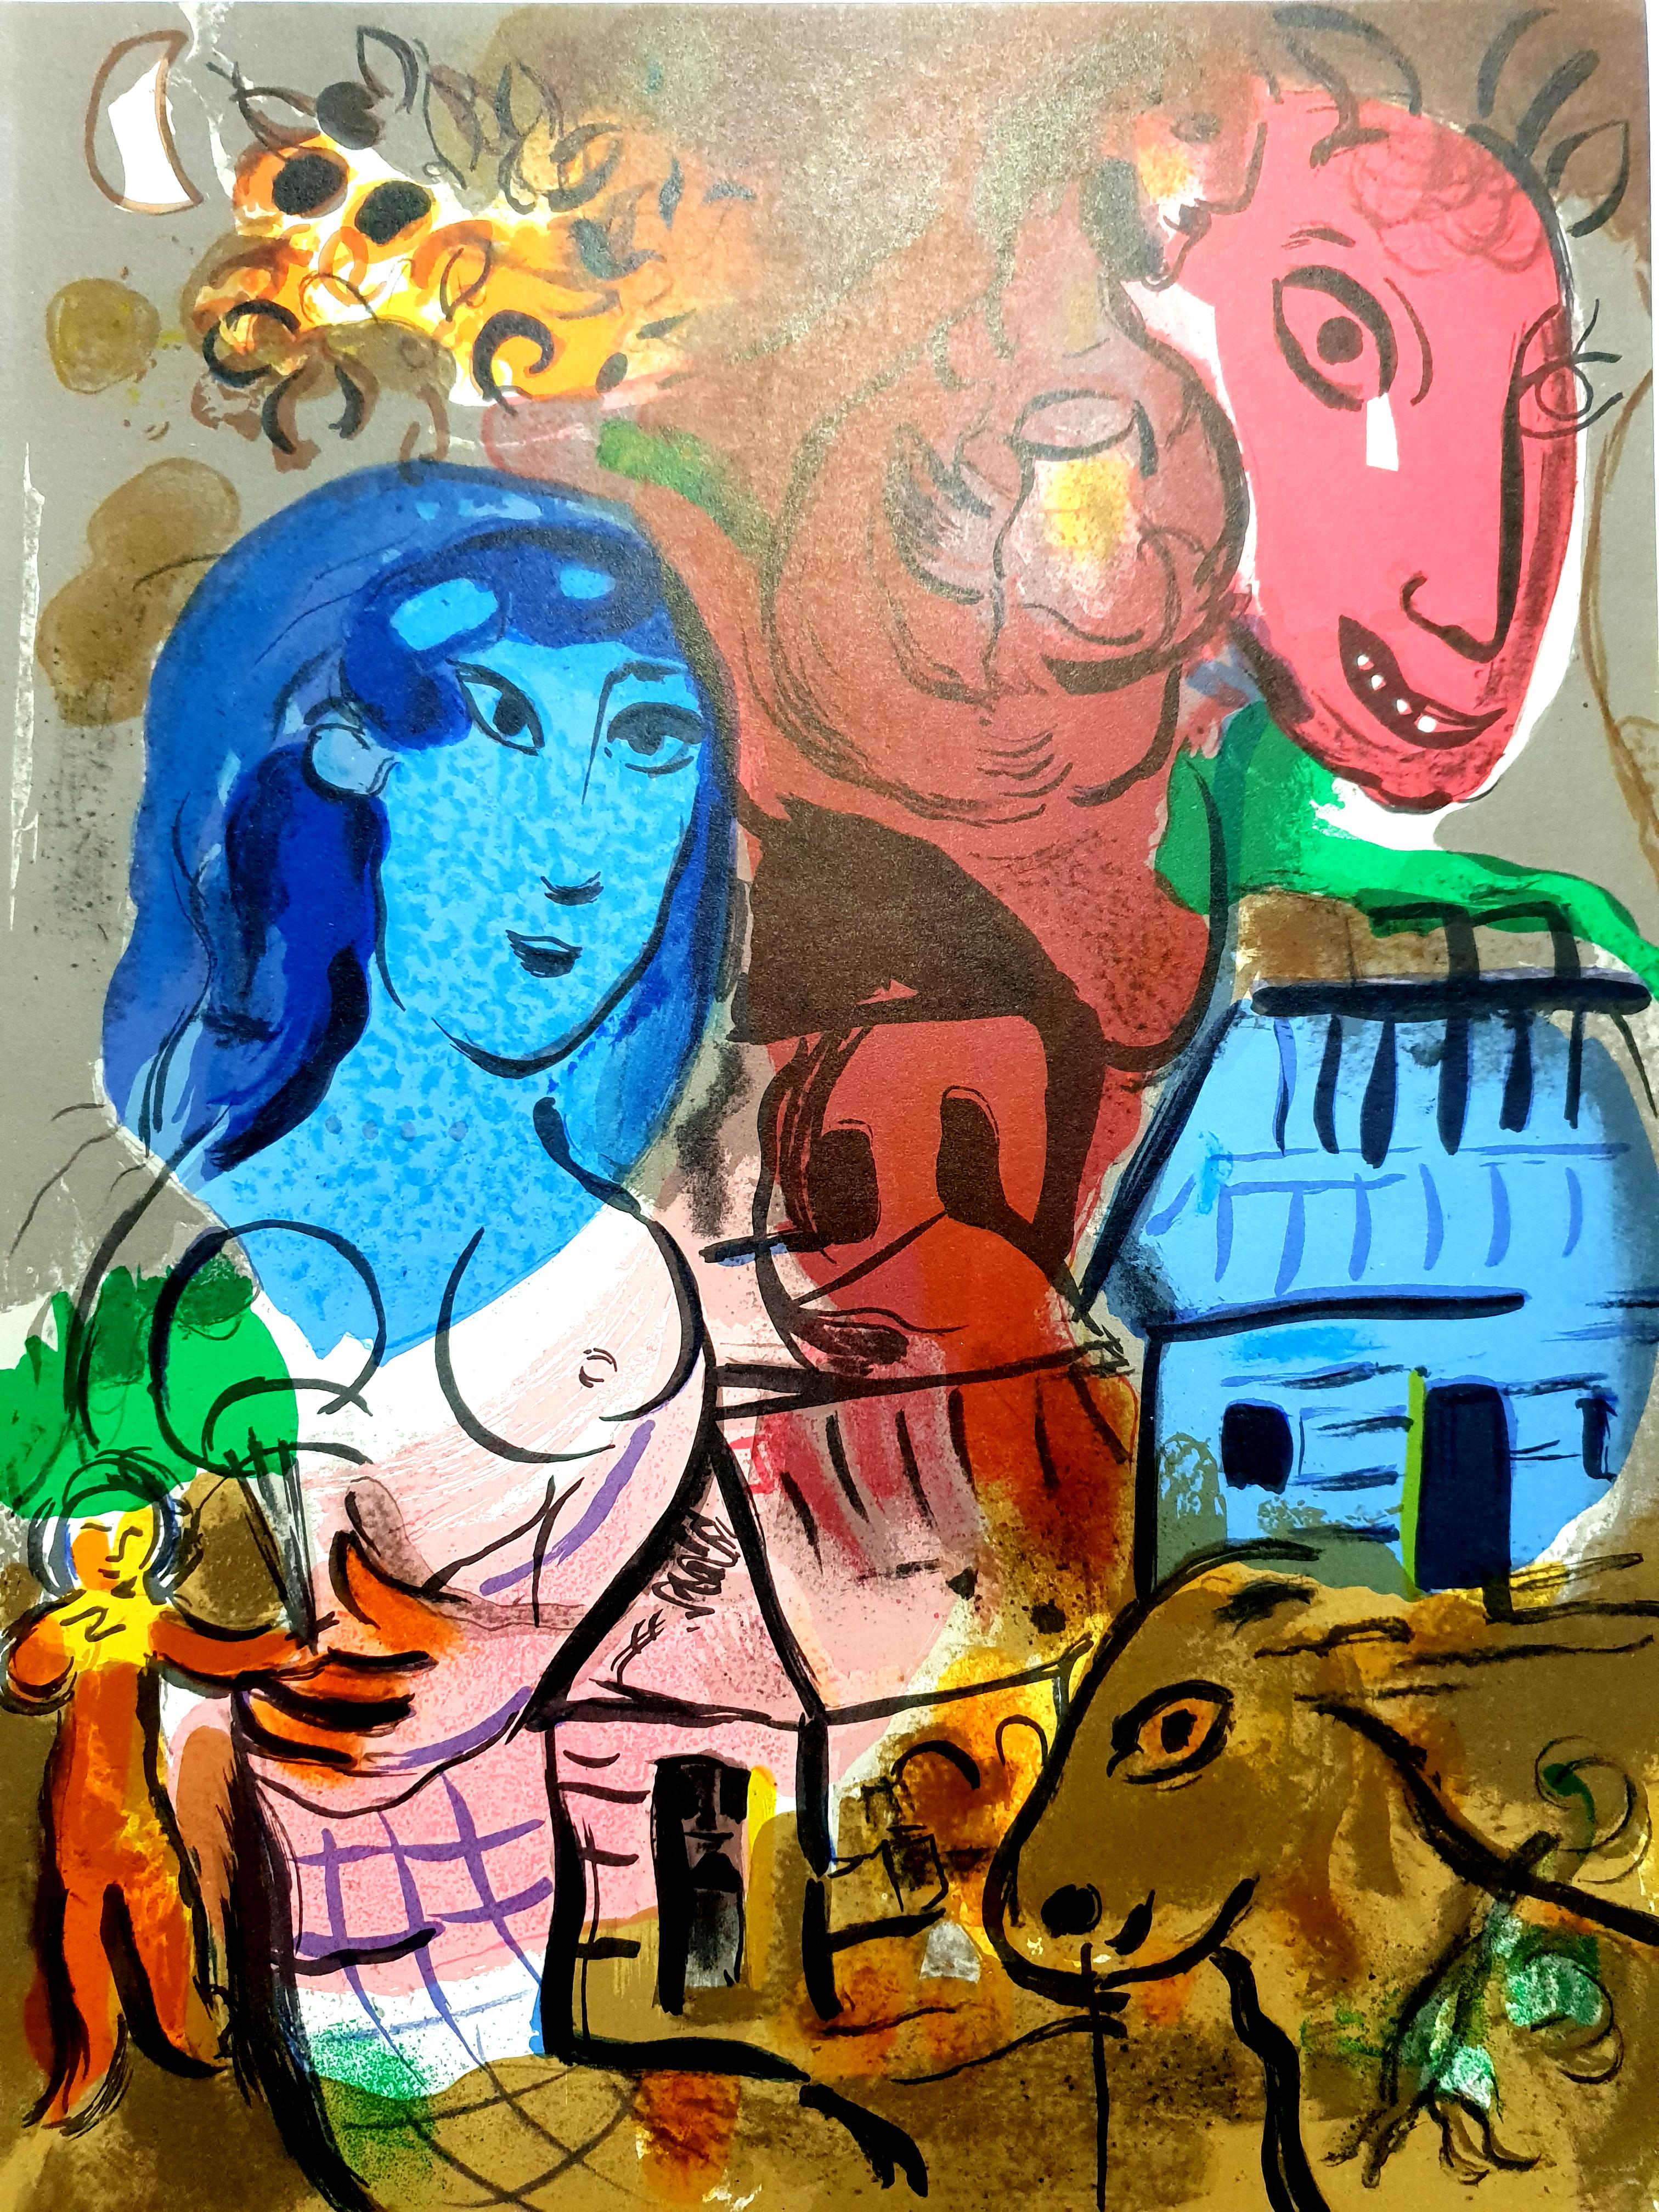 Marc Chagall
Lithographie originale
1969
De la revue XXe siècle, édition de 12 000 exemplaires
Non signé, tel que publié
Dimensions : 32 x 24
Condition : Excellent
Référence : Mourlot 572

Marc Chagall  (né en 1887)

Marc Chagall est né en